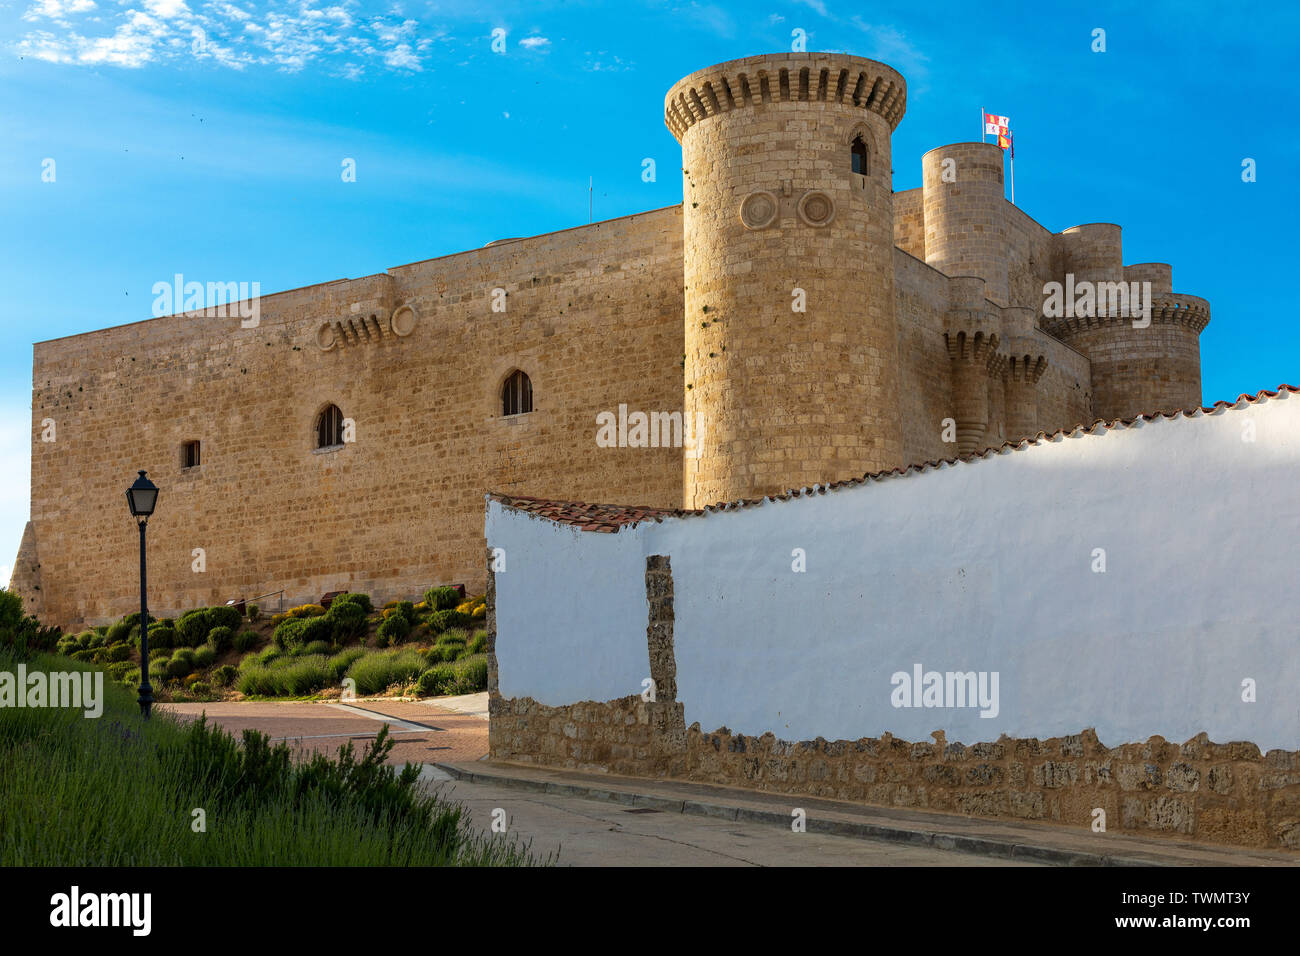 Castillo de los Sarmierto in Fuentes de Valdepero (Palencia - Castilla y León - Spain). XV century. Stock Photo